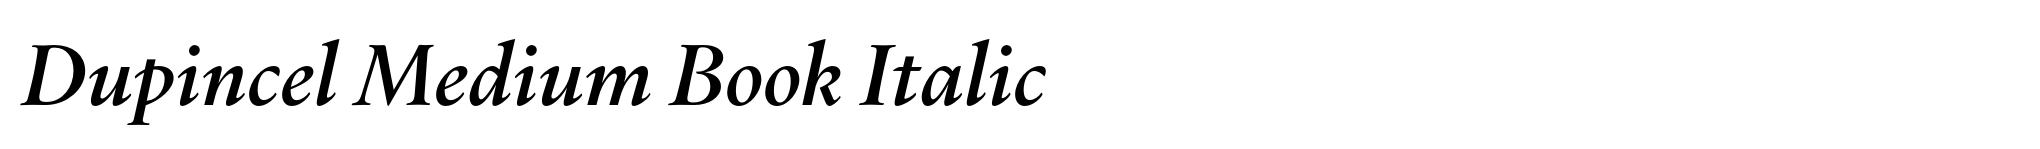 Dupincel Medium Book Italic image